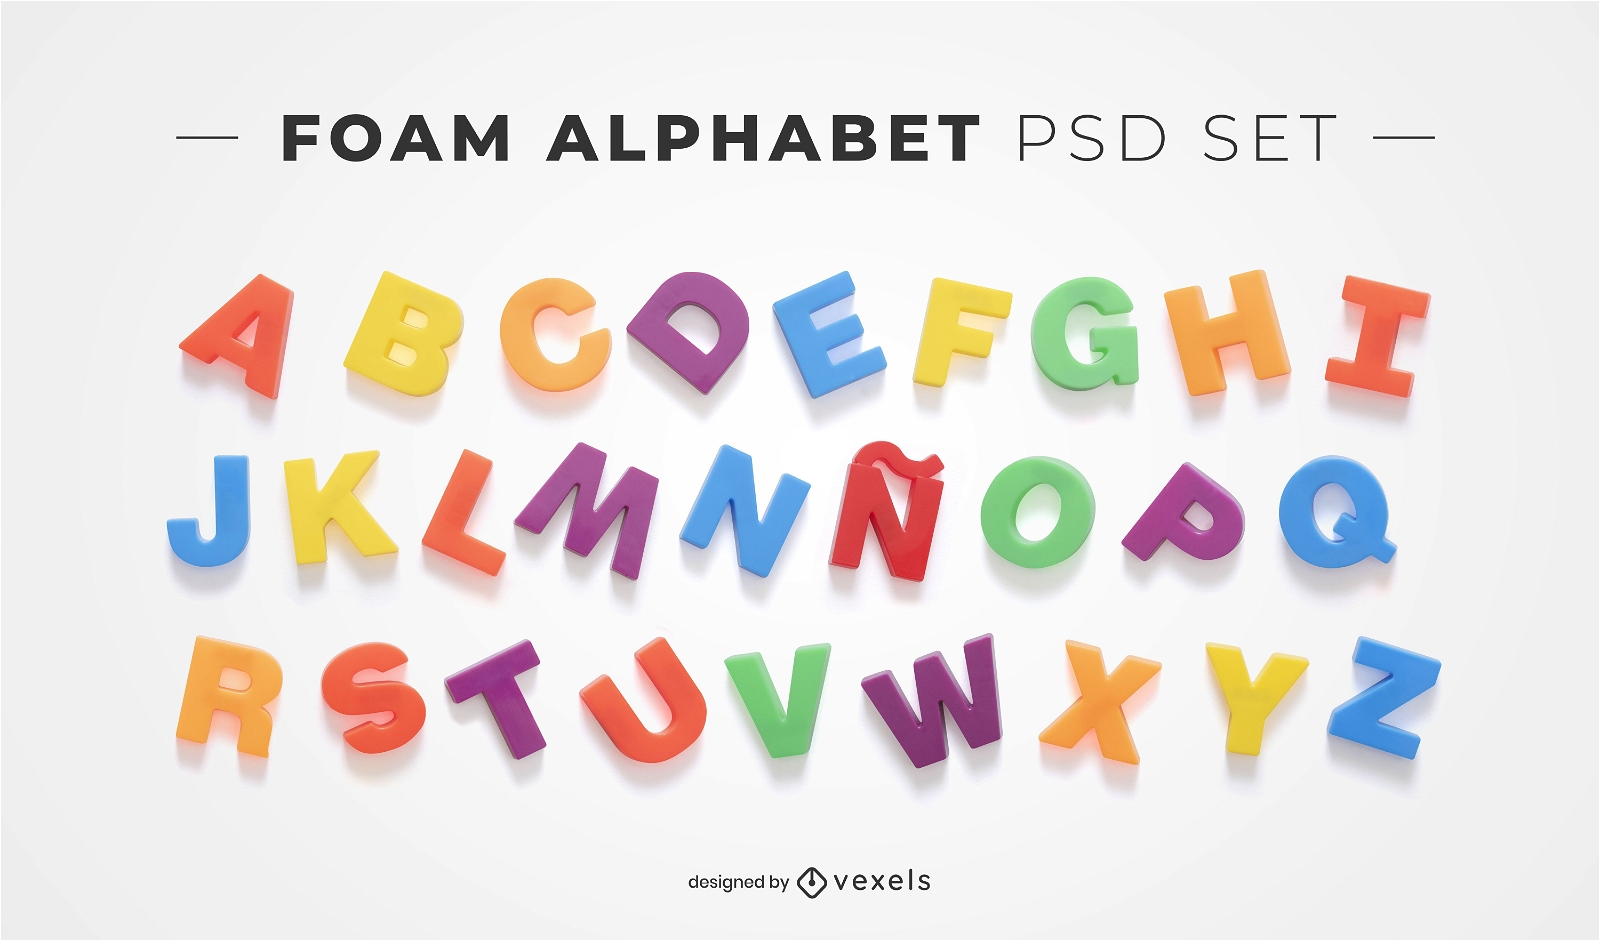 Elementos psd del alfabeto de espuma para maquetas